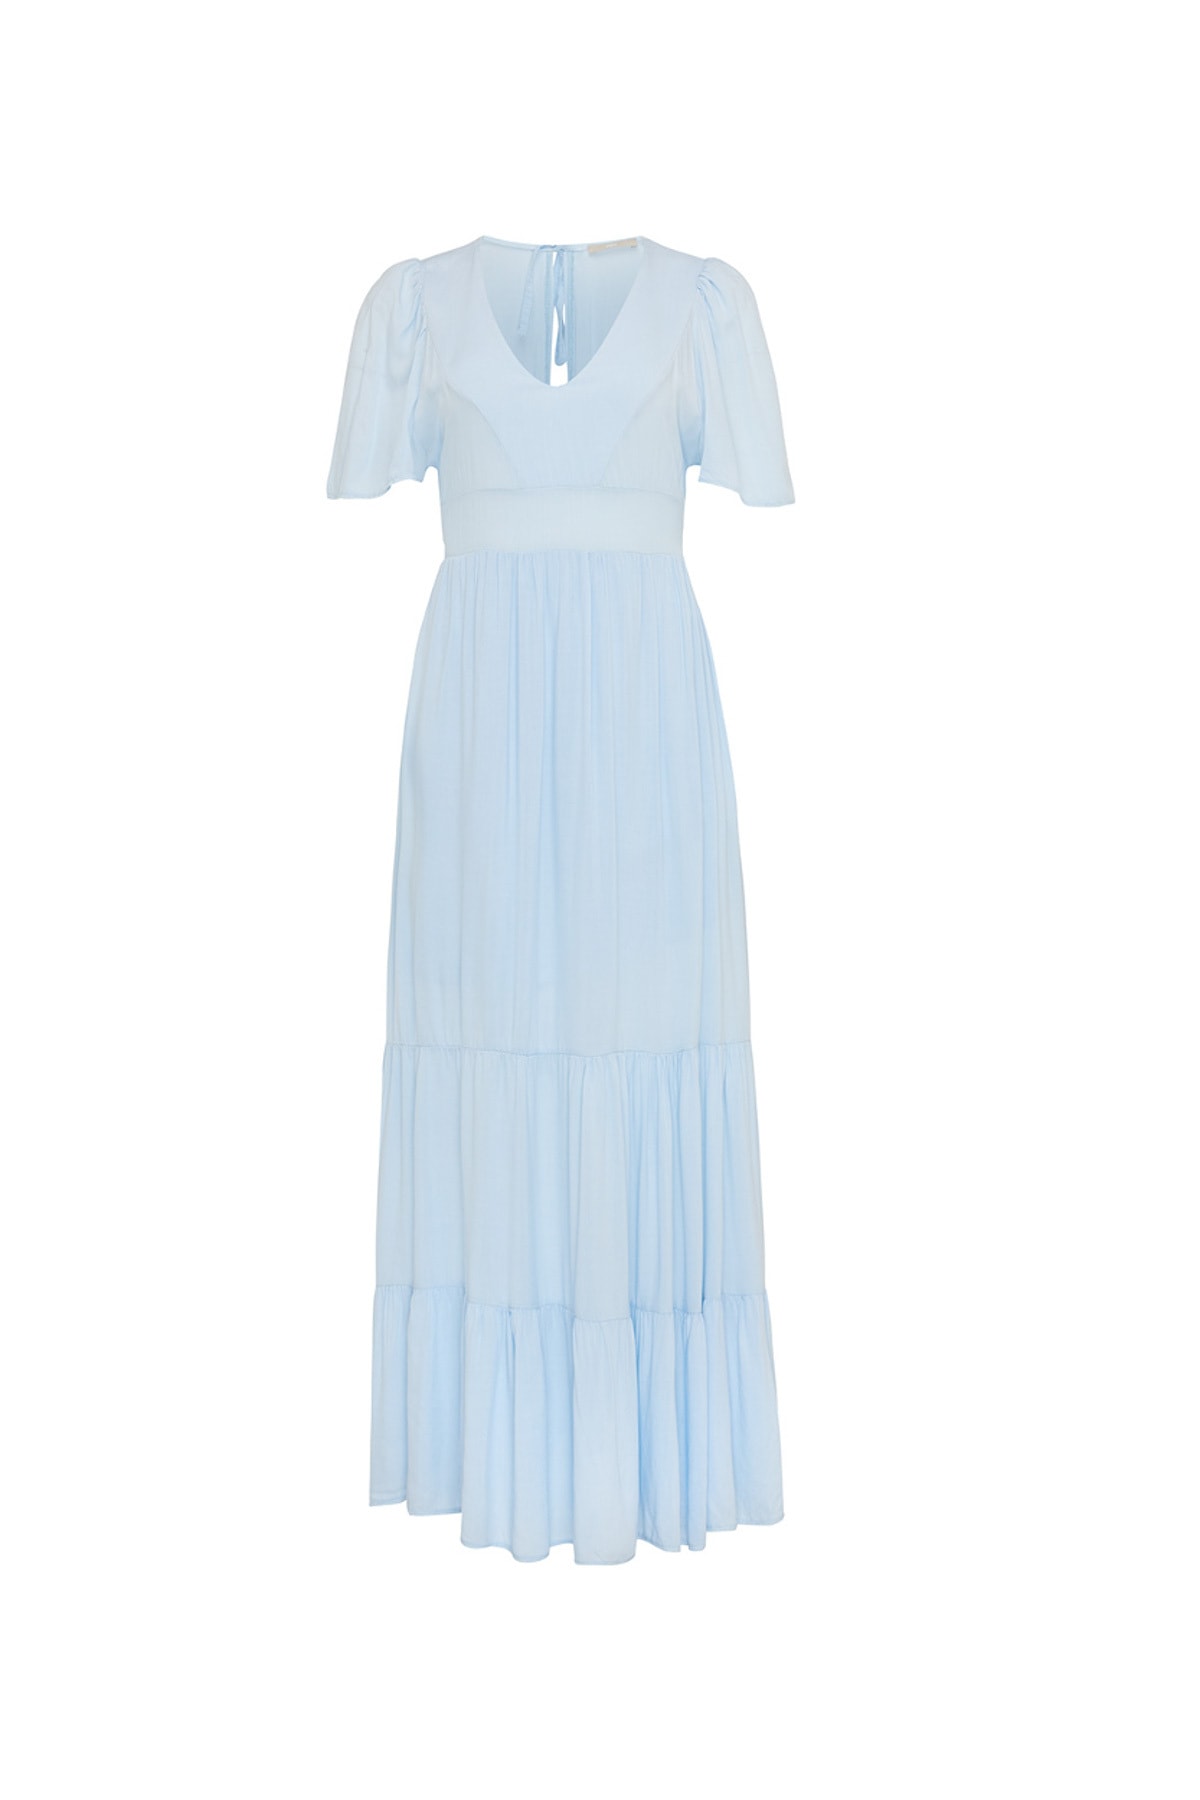 MEXX Kleid Blau Jerseykleid Fast ausverkauft XN7497